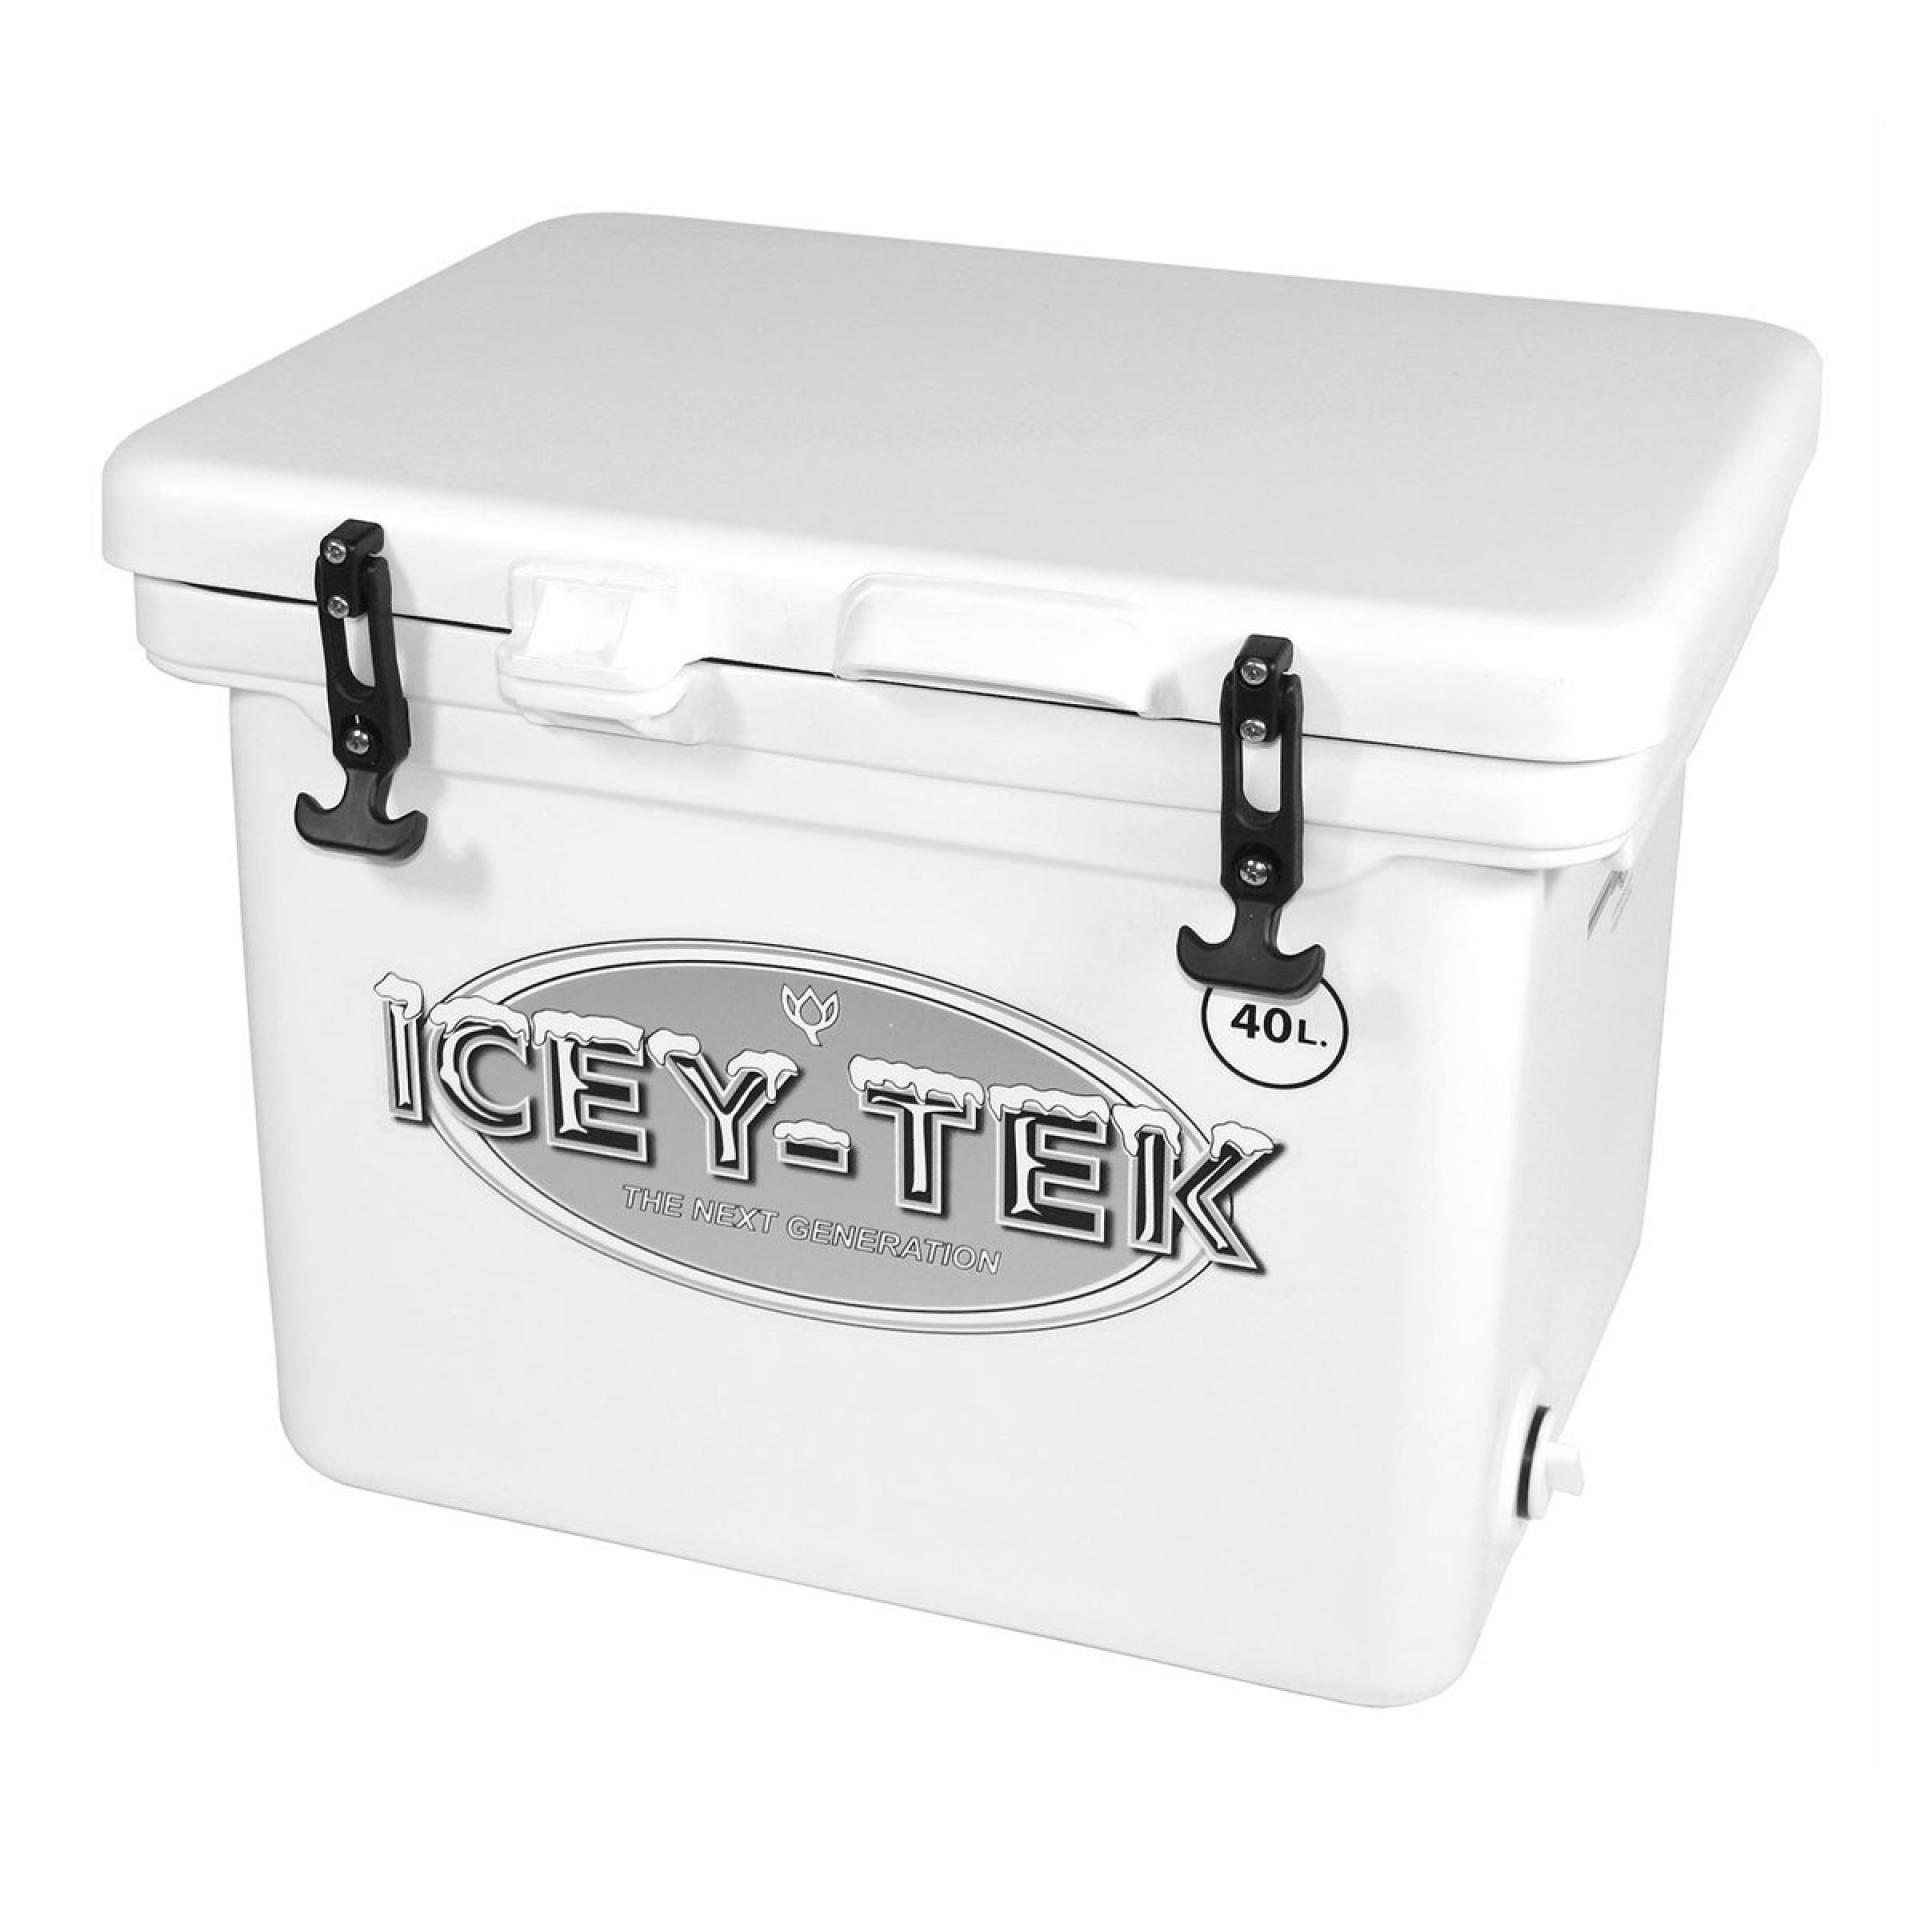 Icey-Tek Cube Box 40L - Yamaha Dealer South Auckland - Buckland